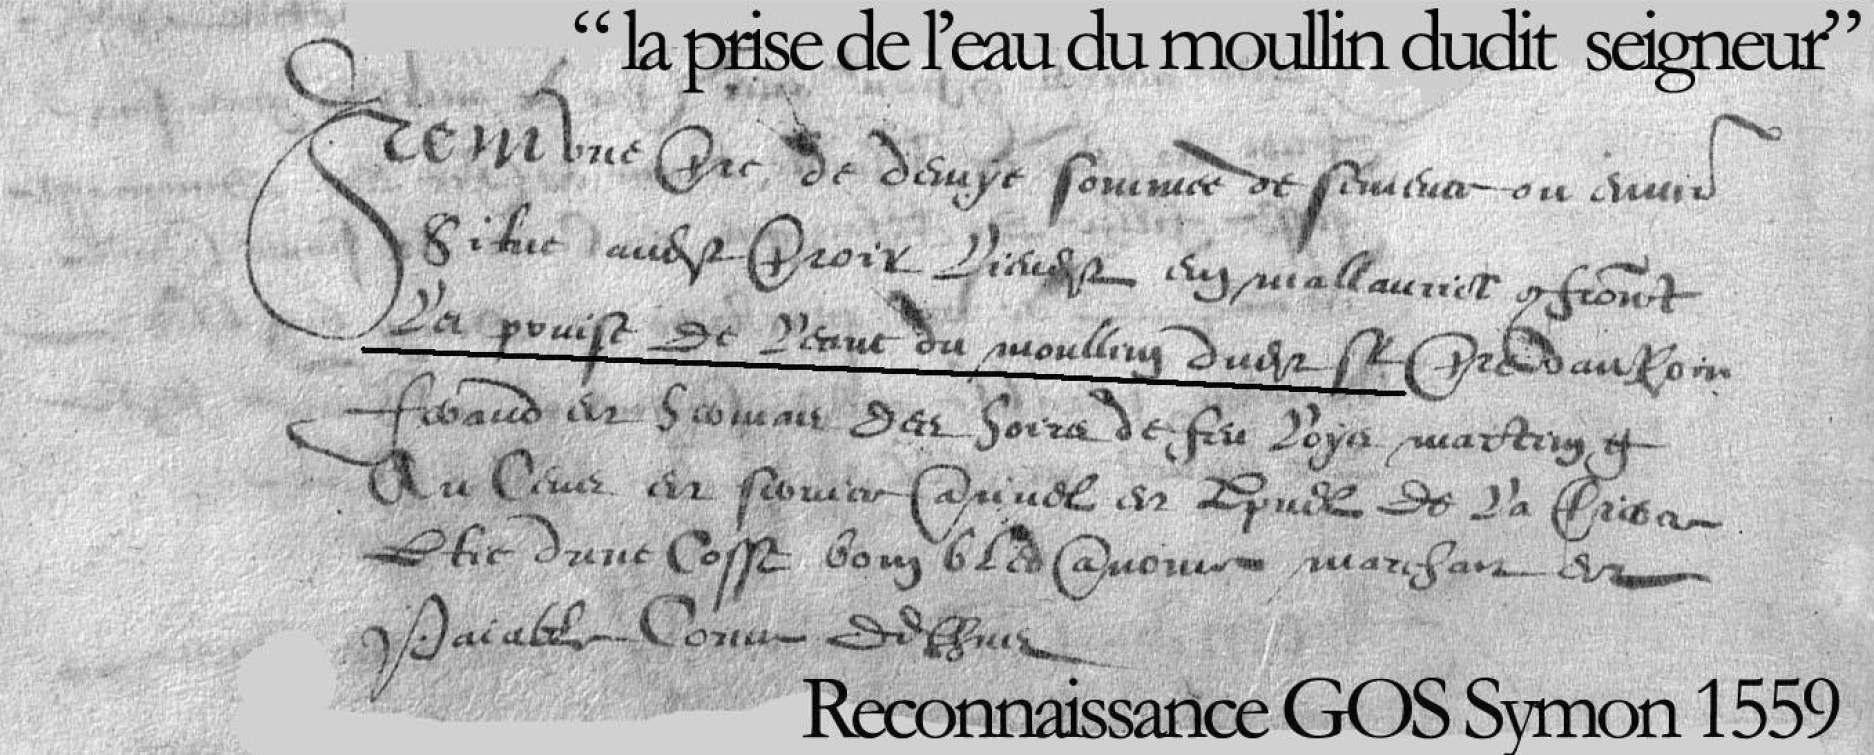 Extrait archive la prise de l'eau du moullin dudit seigneur, reconnaissance Gos Symon en 1559 - Anne-Marie et Michel Courchet - Saint-Julien-le-Montagnier